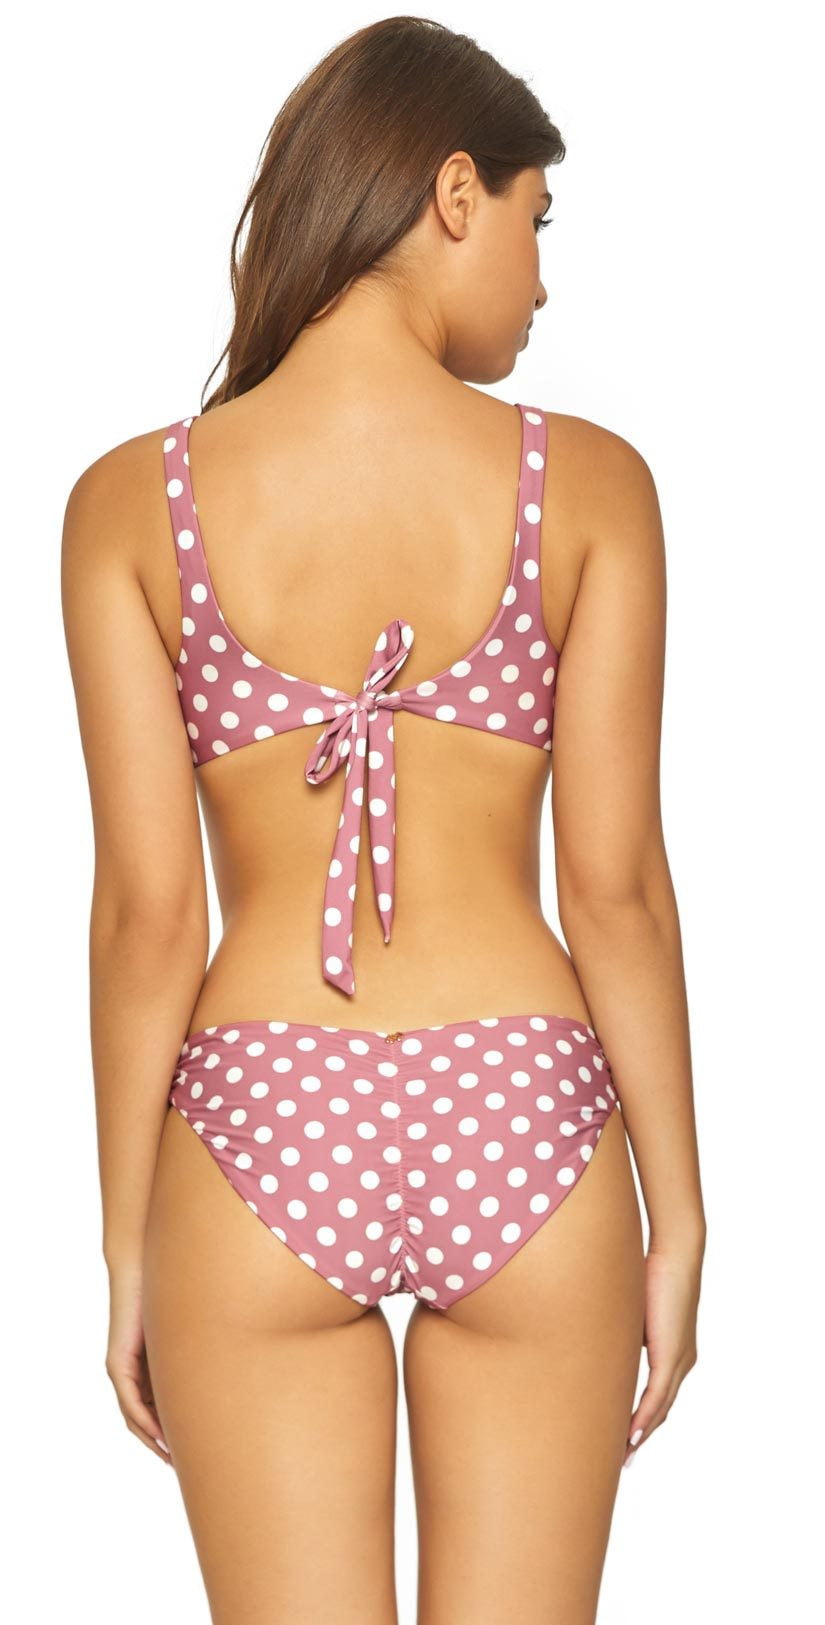 Hot Pink Basic Ruched Bikini Bottoms - PQ Swim – PQ Swim (PilyQ)